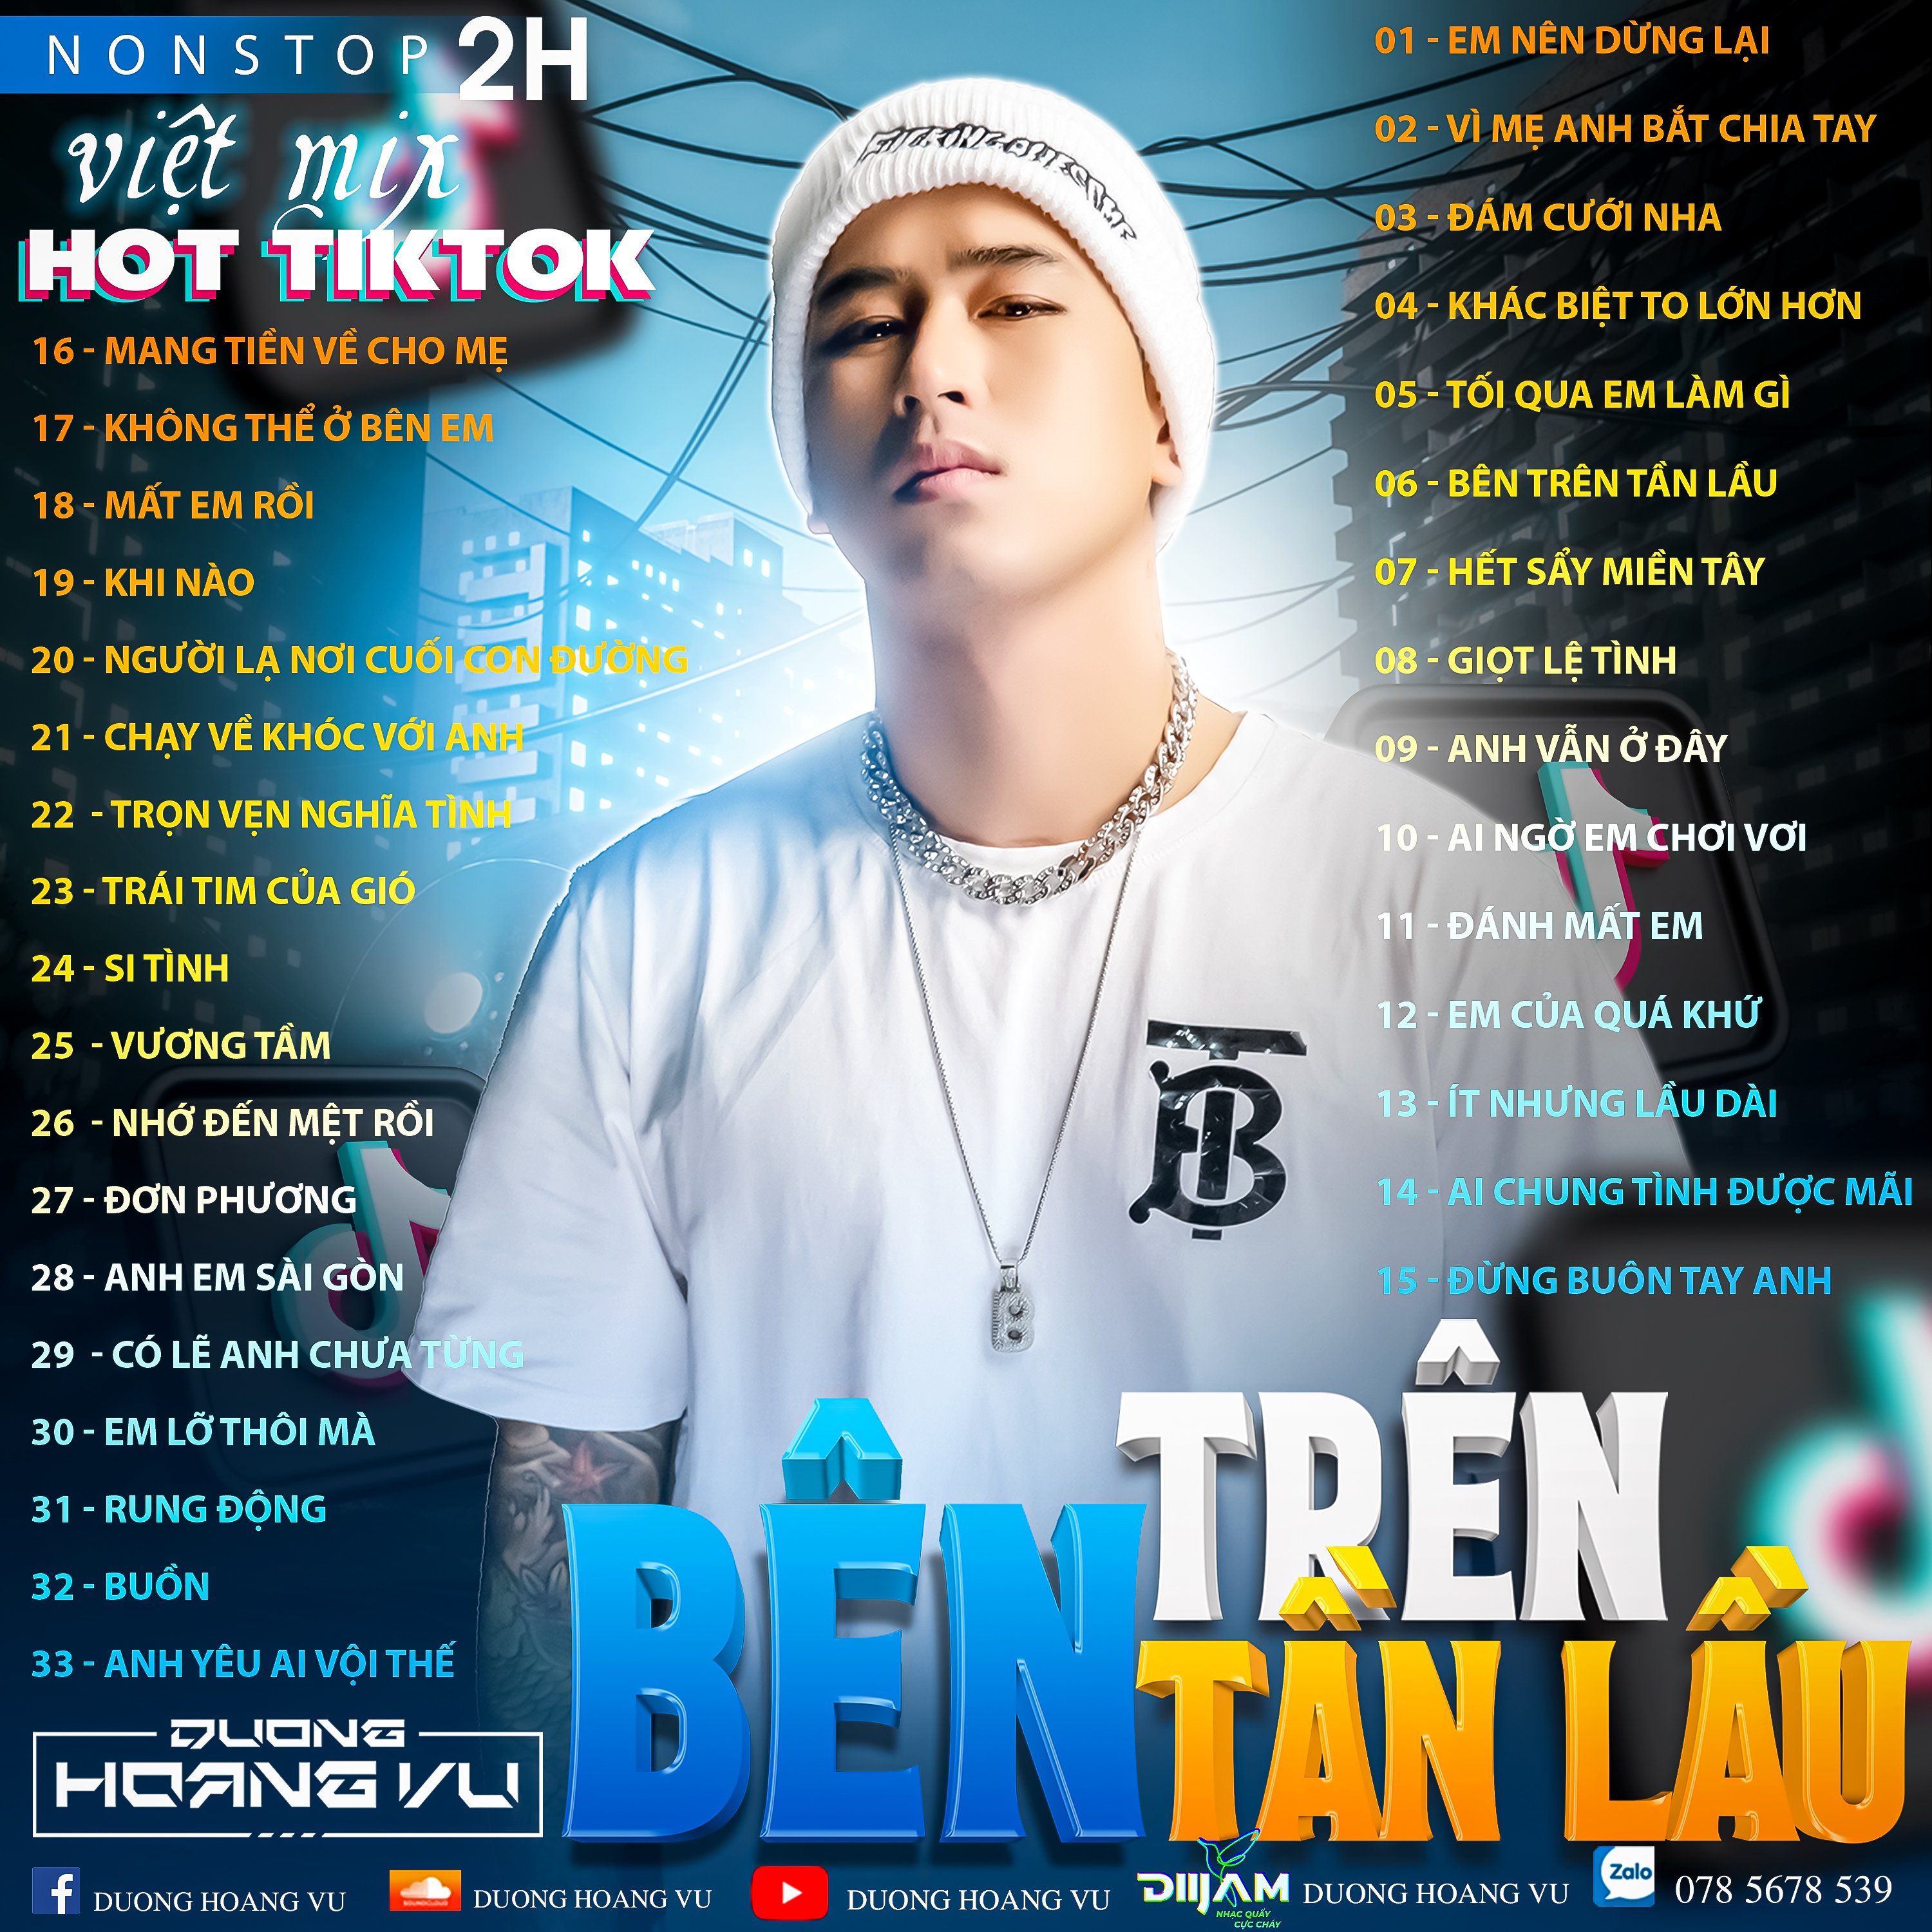 Спампаваць (Demo ) Nst Việt Mix Hot tiktok 2h - 2022 - DJ Dương Hoàng Vũ Mix Mua Full IB Zalo 078.5678.539